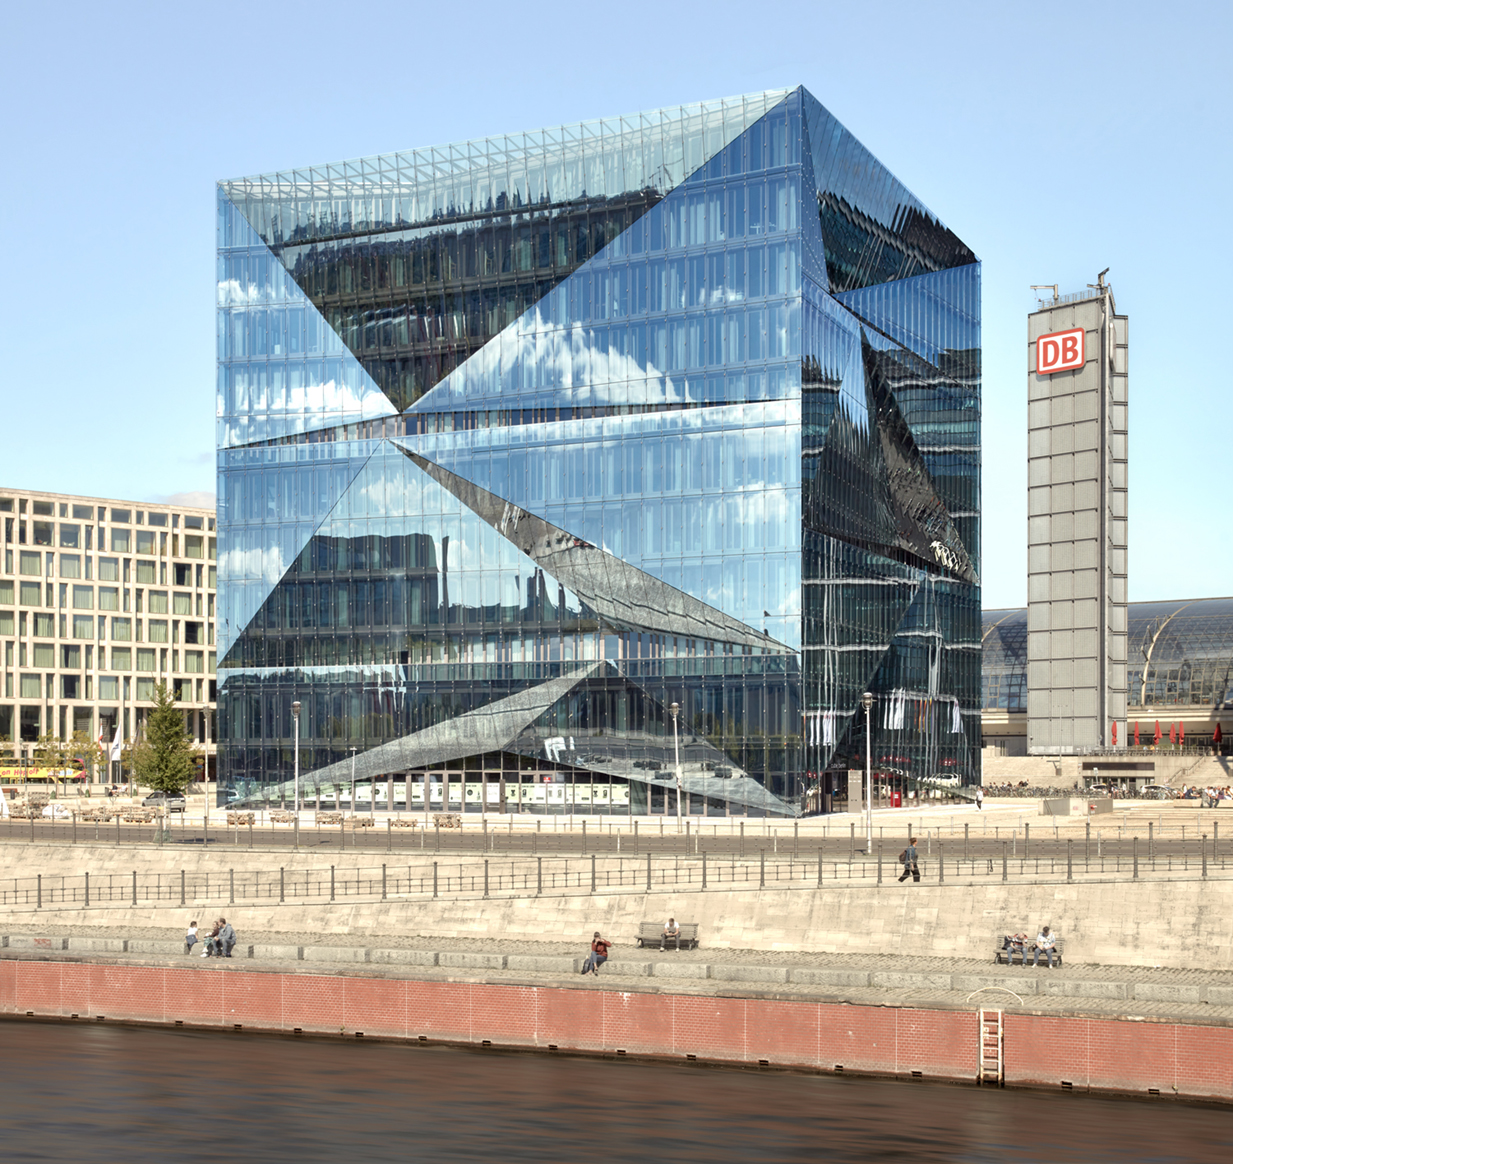 Aloys Kiefer Architekturfotografie: Quadrattisches Motiv. Bläulicher Glaskubus, rechts im Hintergrund ein schlanker Turm mit der Aufschrift DB.